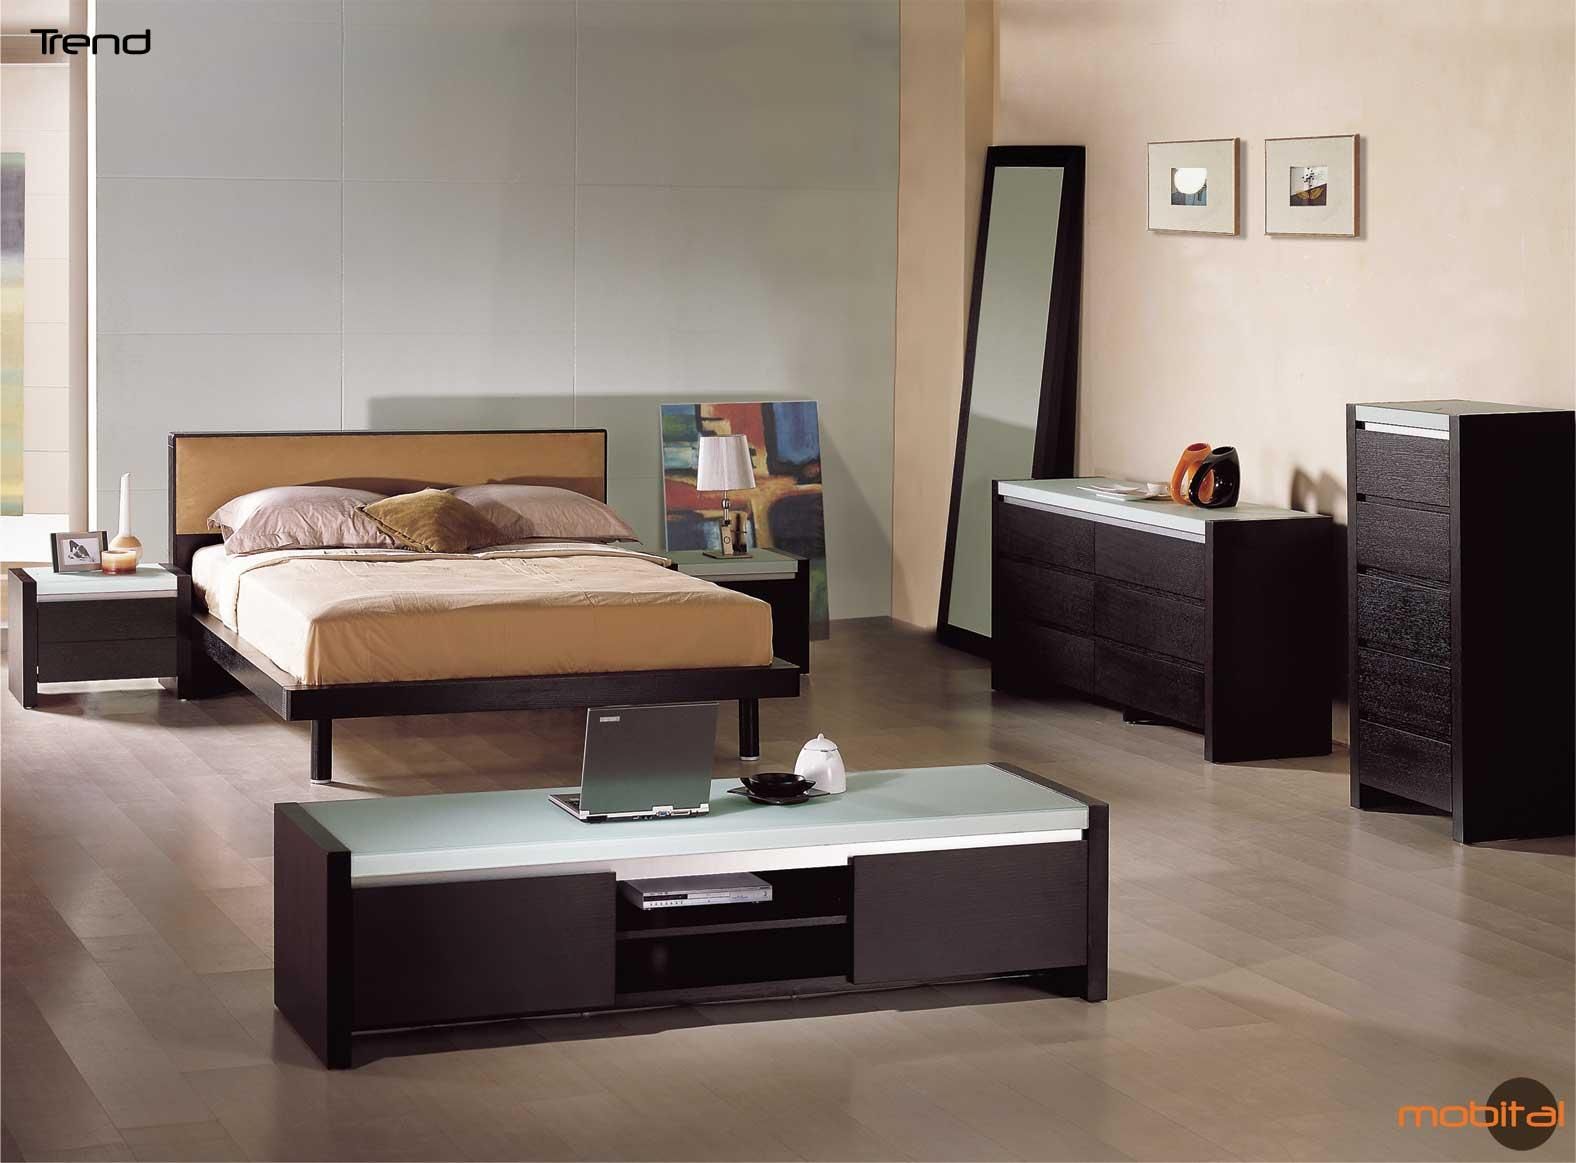 mens bedroom wallpaper,furniture,bedroom,bed,room,bed frame